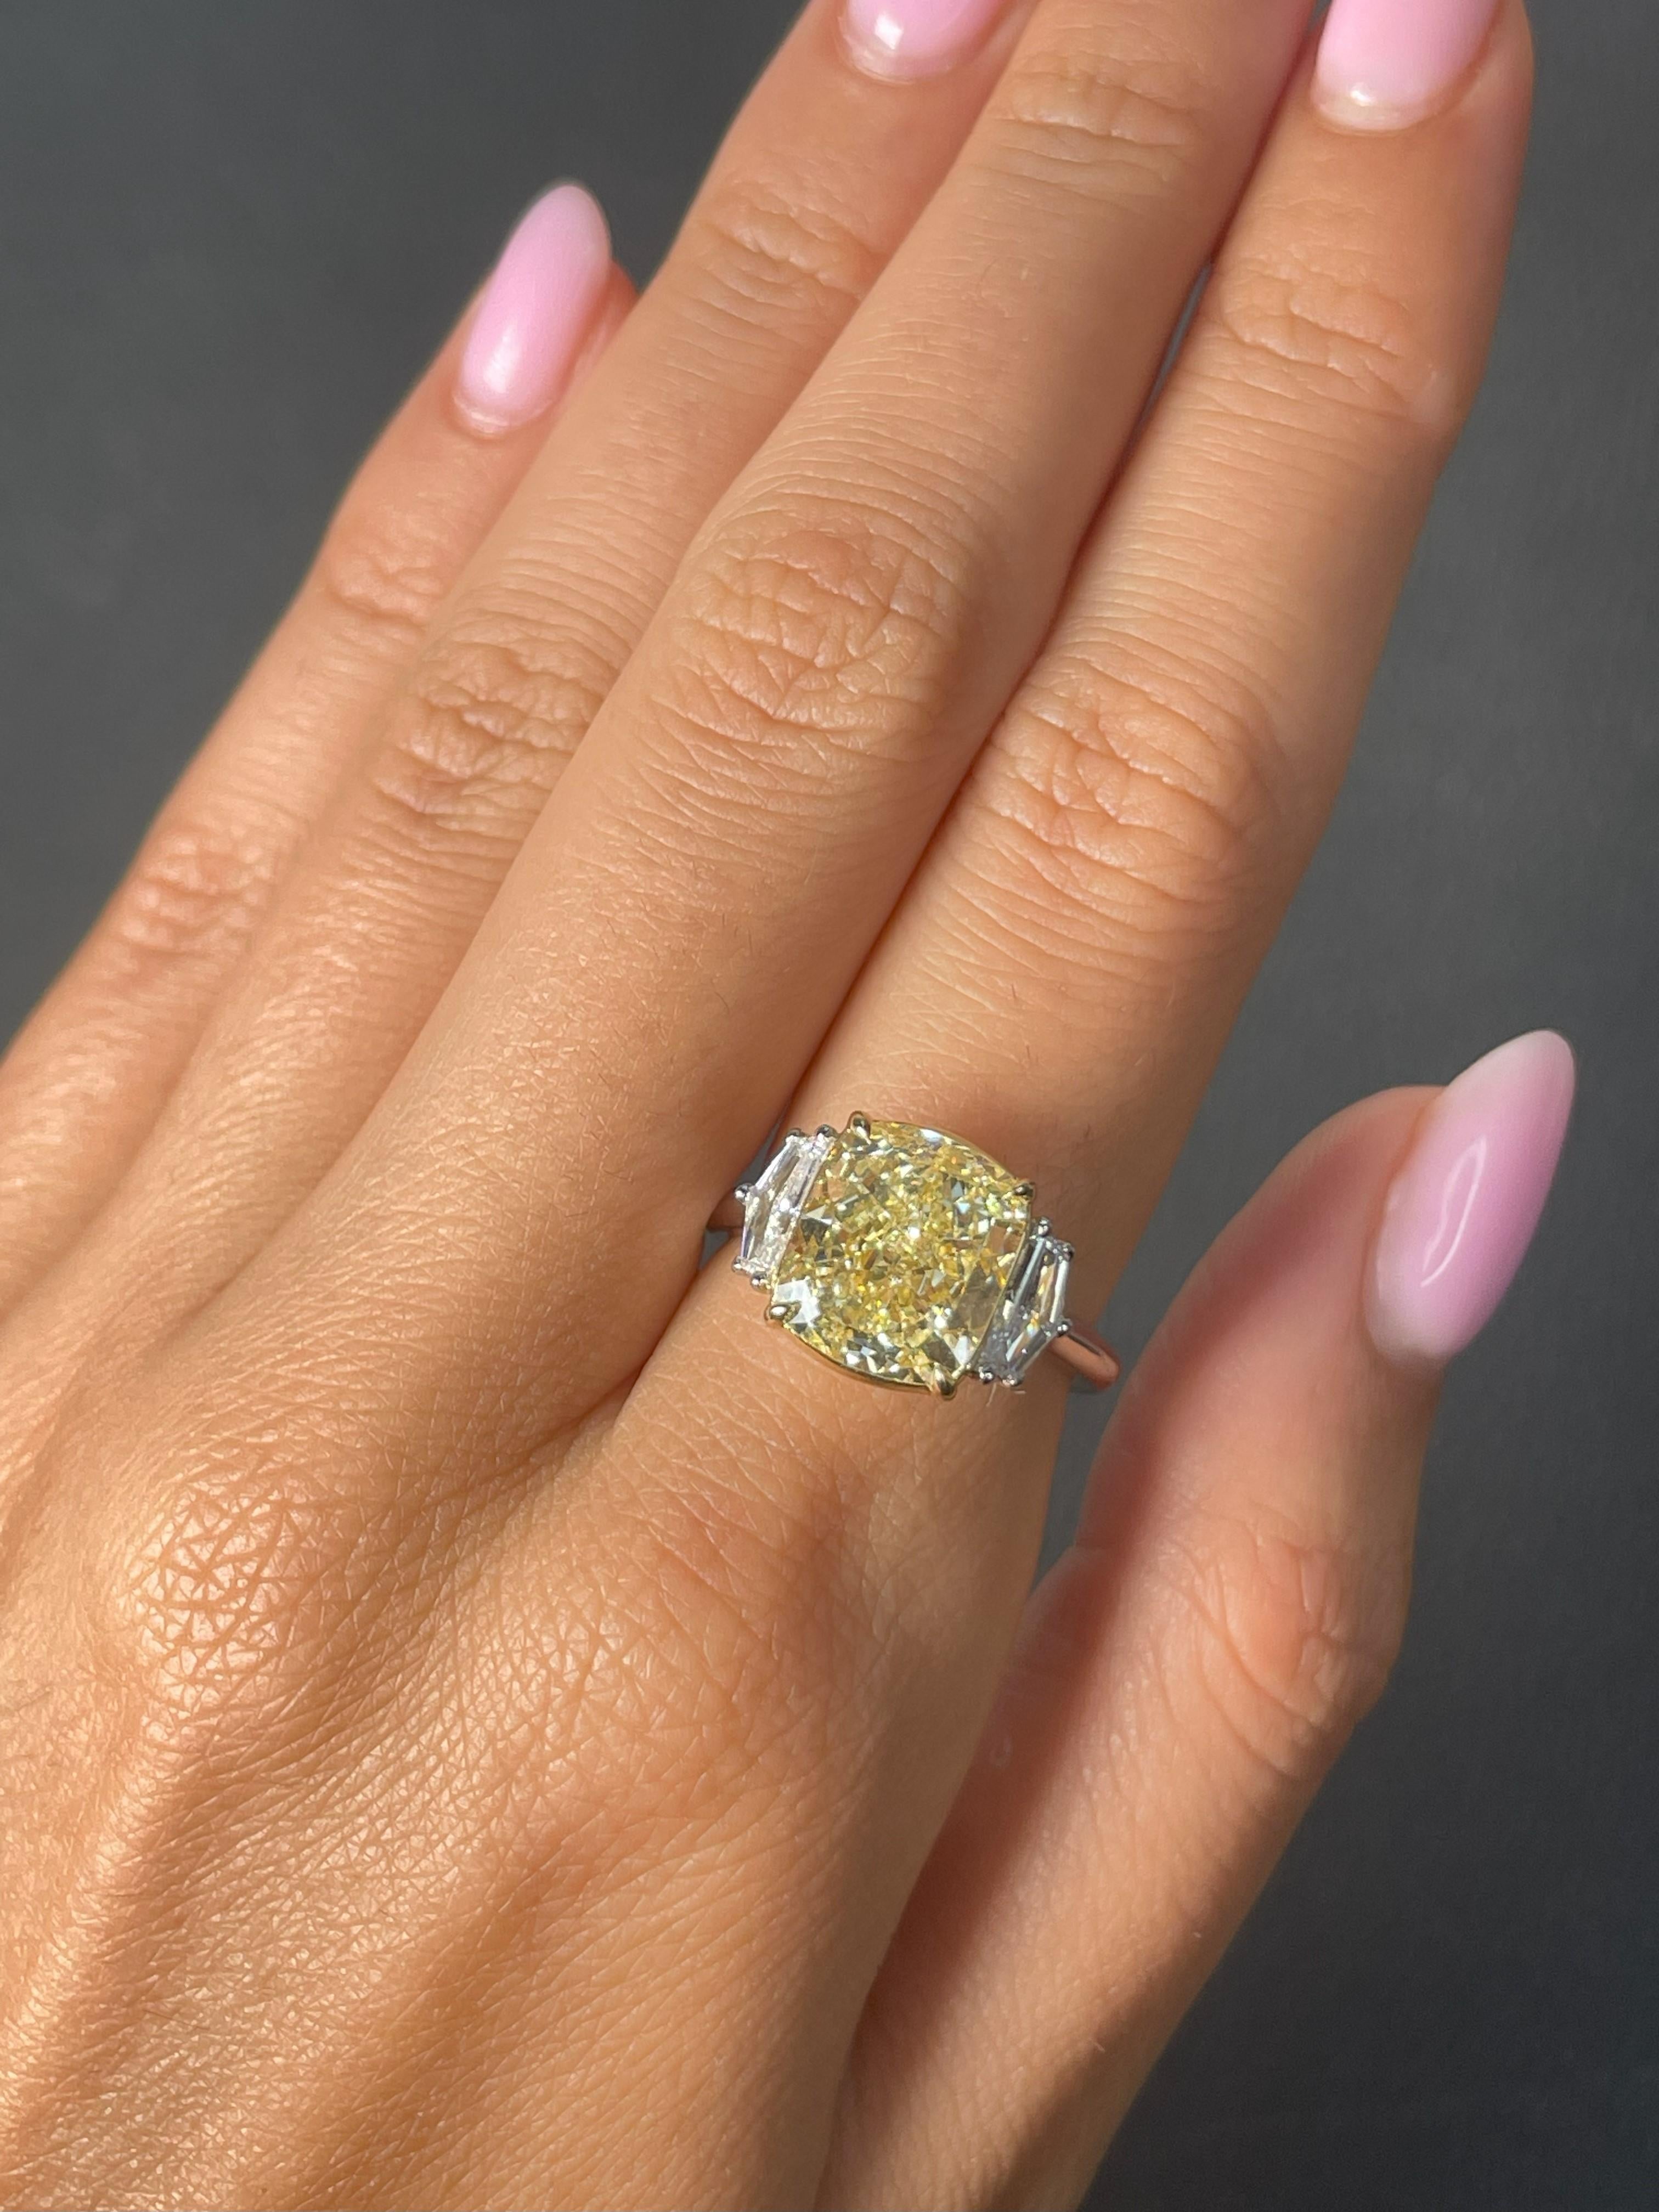 Exquisiter dreisteiniger Verlobungsring mit einem 5,19 Karat schweren, hellgelben Diamanten im Kissenschliff, dessen Reinheit von GIA als VS1 zertifiziert wurde. Der zentrale Diamant wird elegant von zwei Diamanten im Epaulet-Schliff mit einem